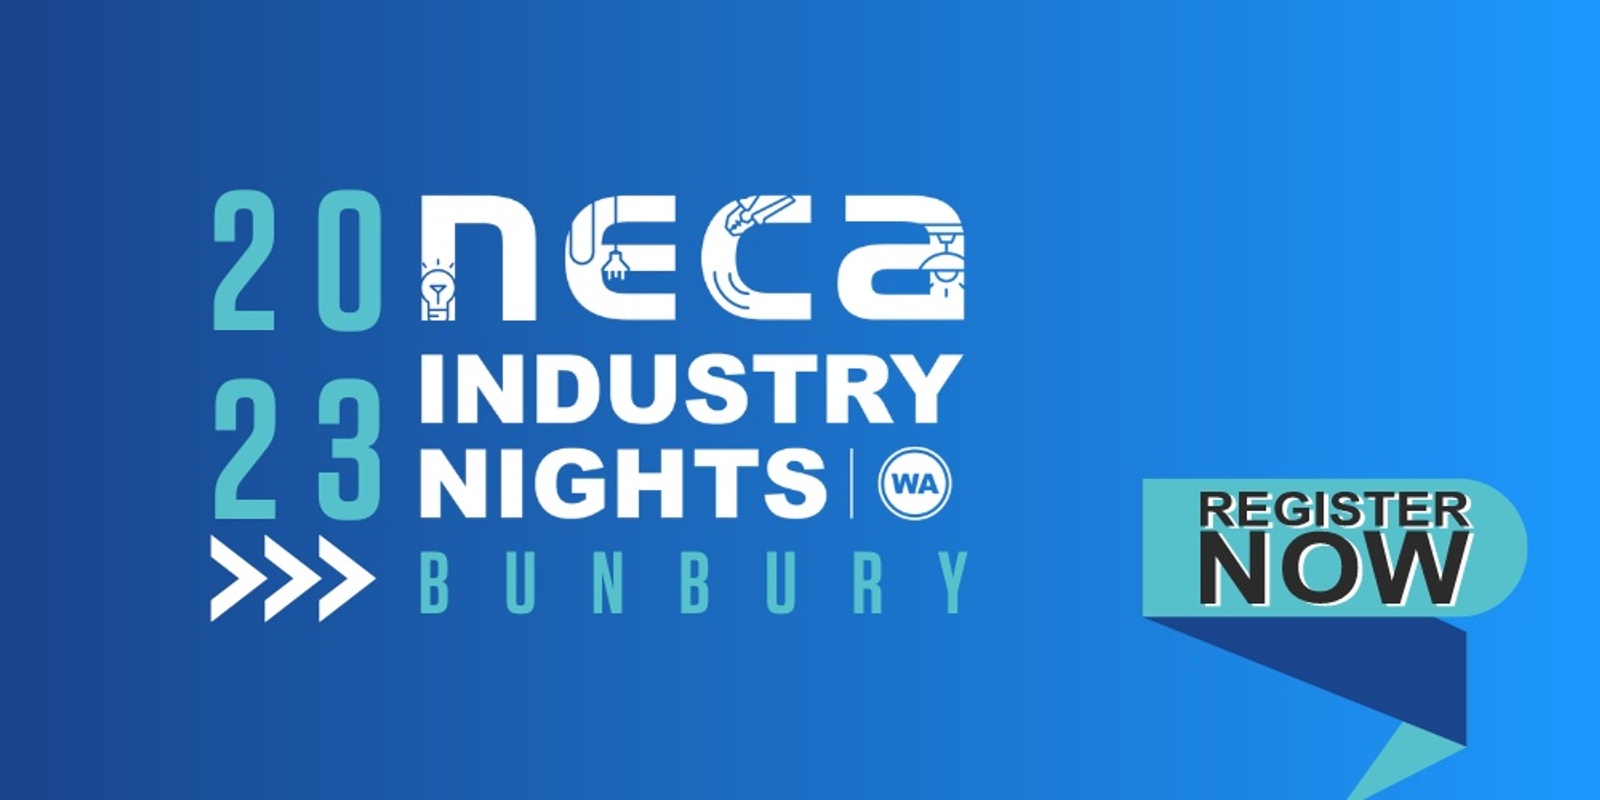 Banner image for 2023 NECA WA Industry Night - Bunbury